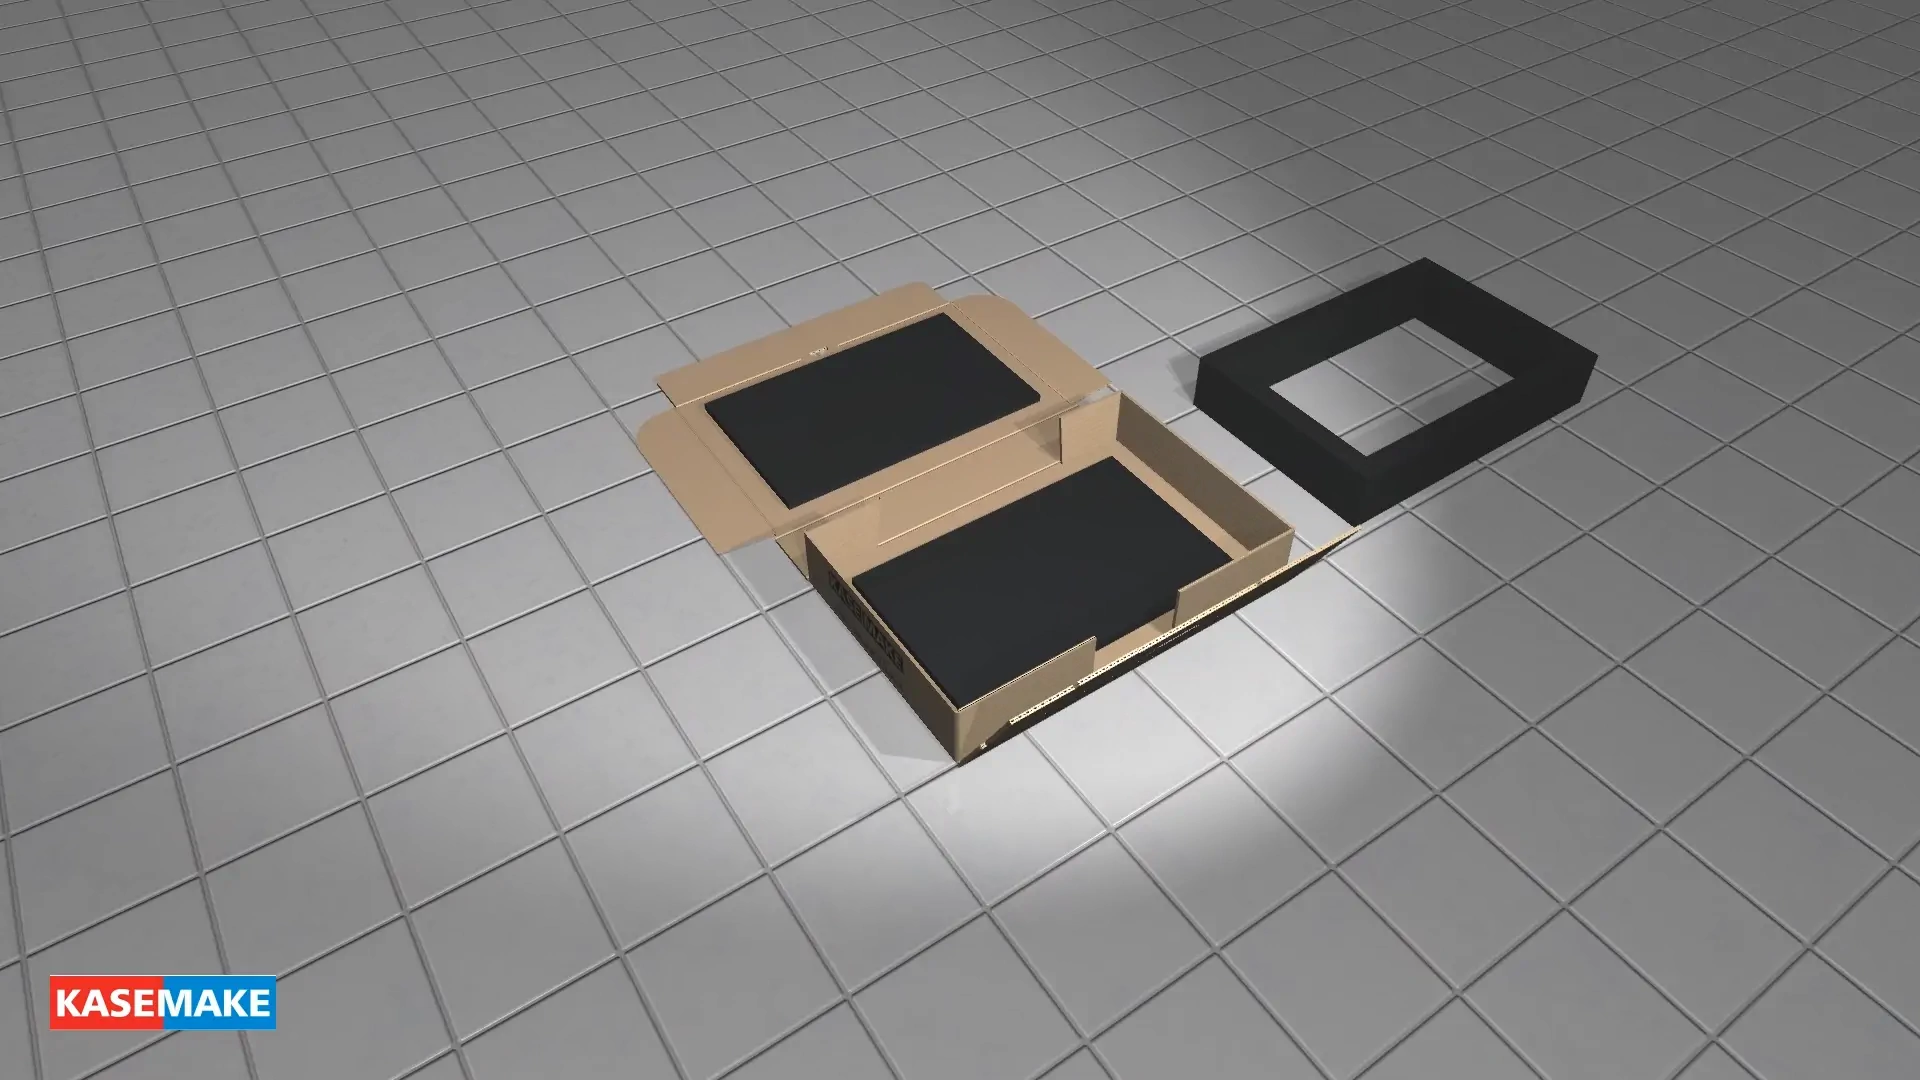 FEFCO 0426 상자가 사실적인 3D로 접히는 것을 지켜보십시오.